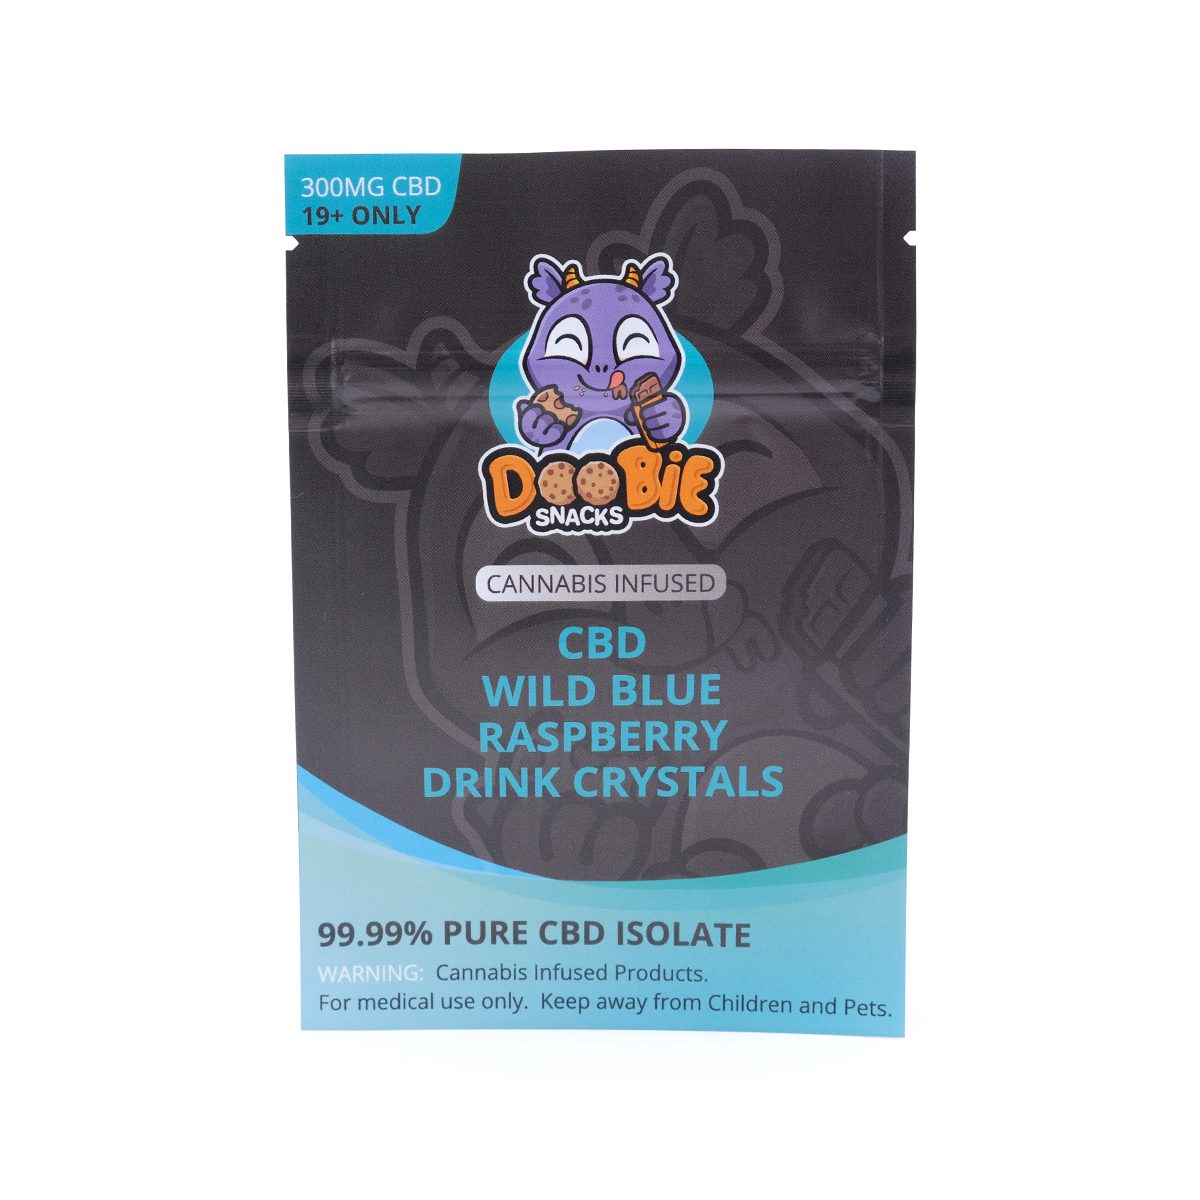 Buy Wild Blue Raspberry Crystal Mix 150mg CBD By Doobie Snacks